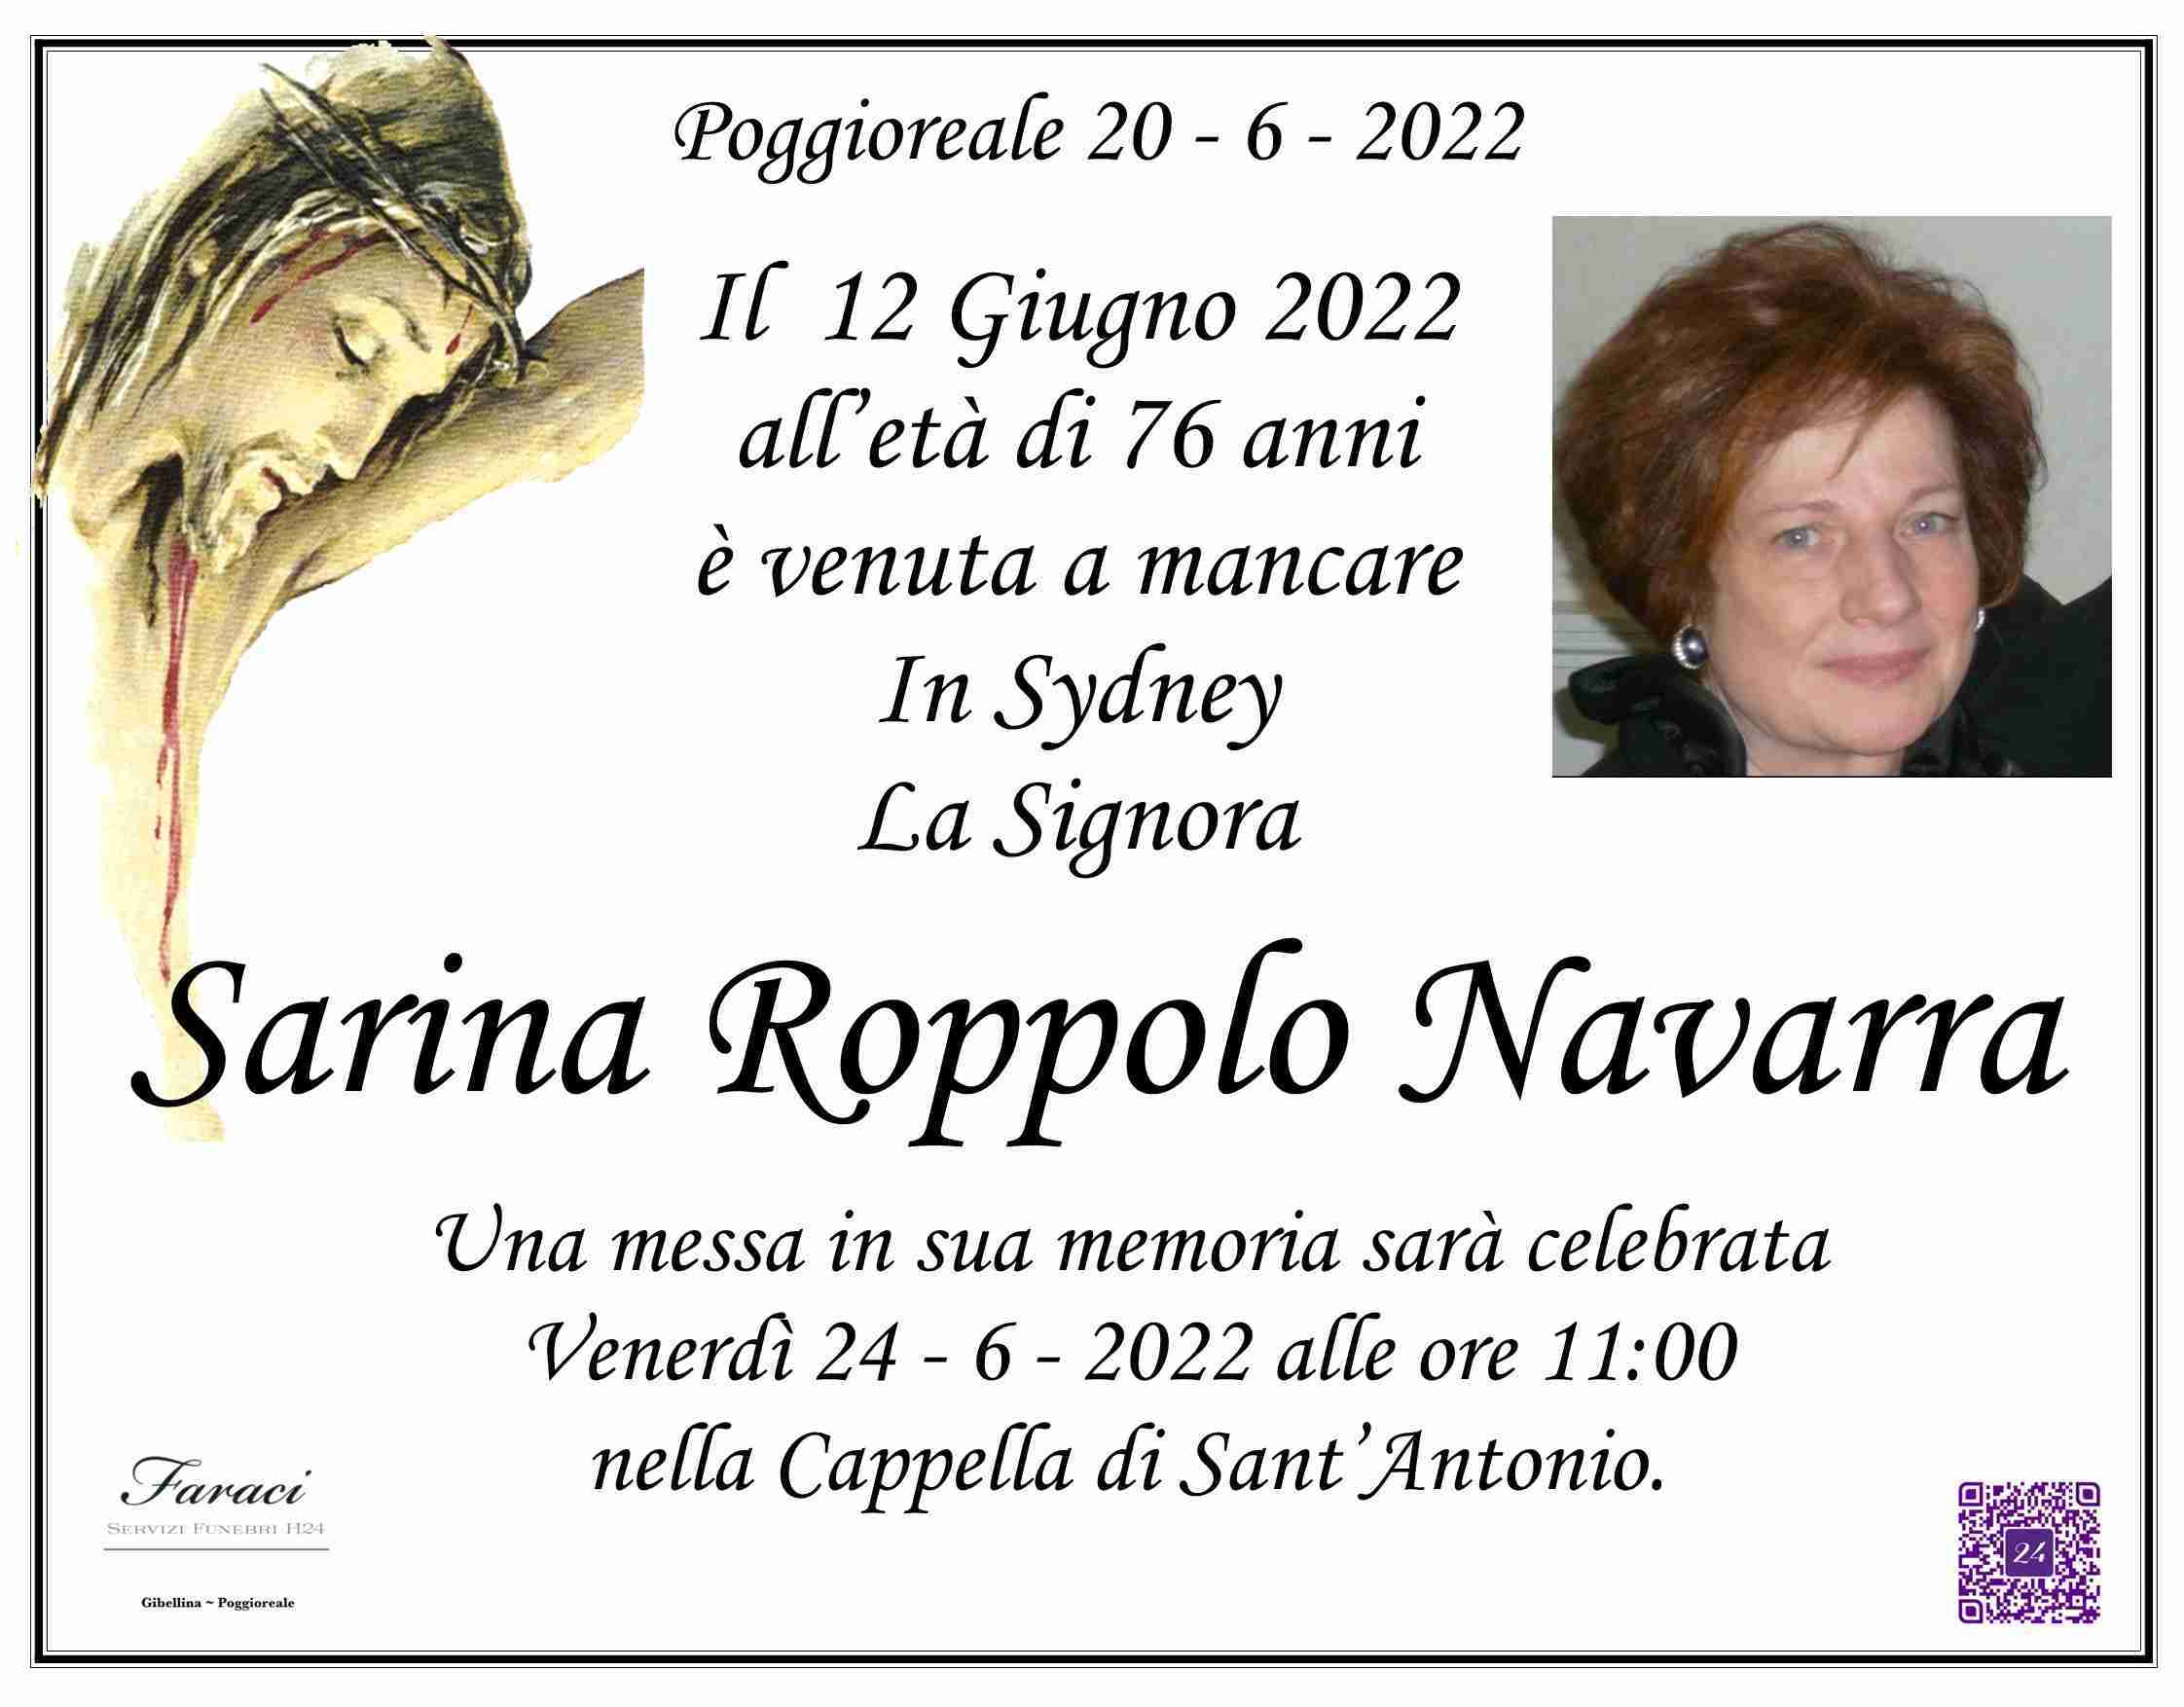 Sarina Roppolo Navarra